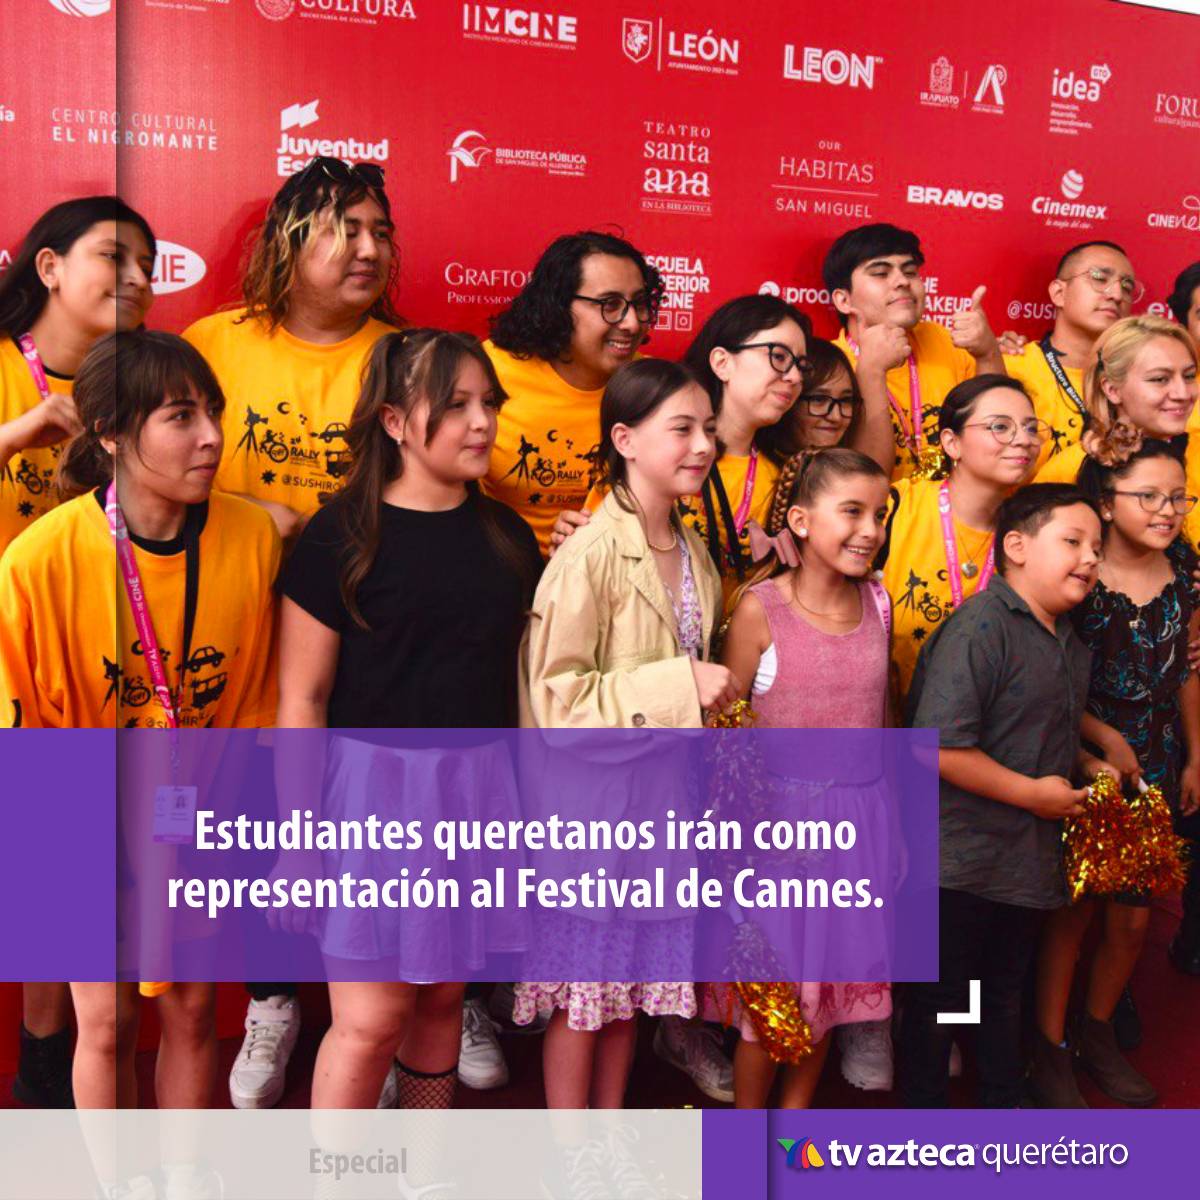 ¡Un orgullo queretano! Los estudiantes del colegio de cine queretano Cenecé, se van al Festival de Cannes, representando a México y a Querétaro. 🤩🙌

#TvAztecaQuerétaro #Cine #FestivaldeCannes